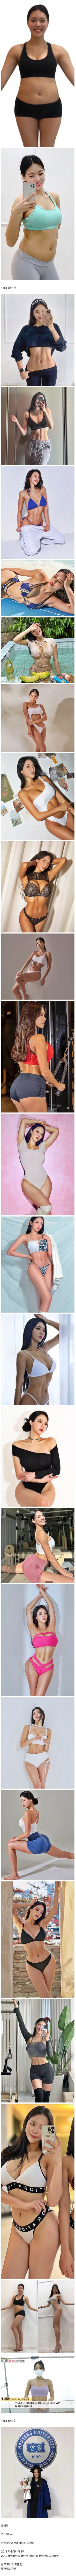 피트니스 모델 조애라 18kg 감량 전후 몸매 변화